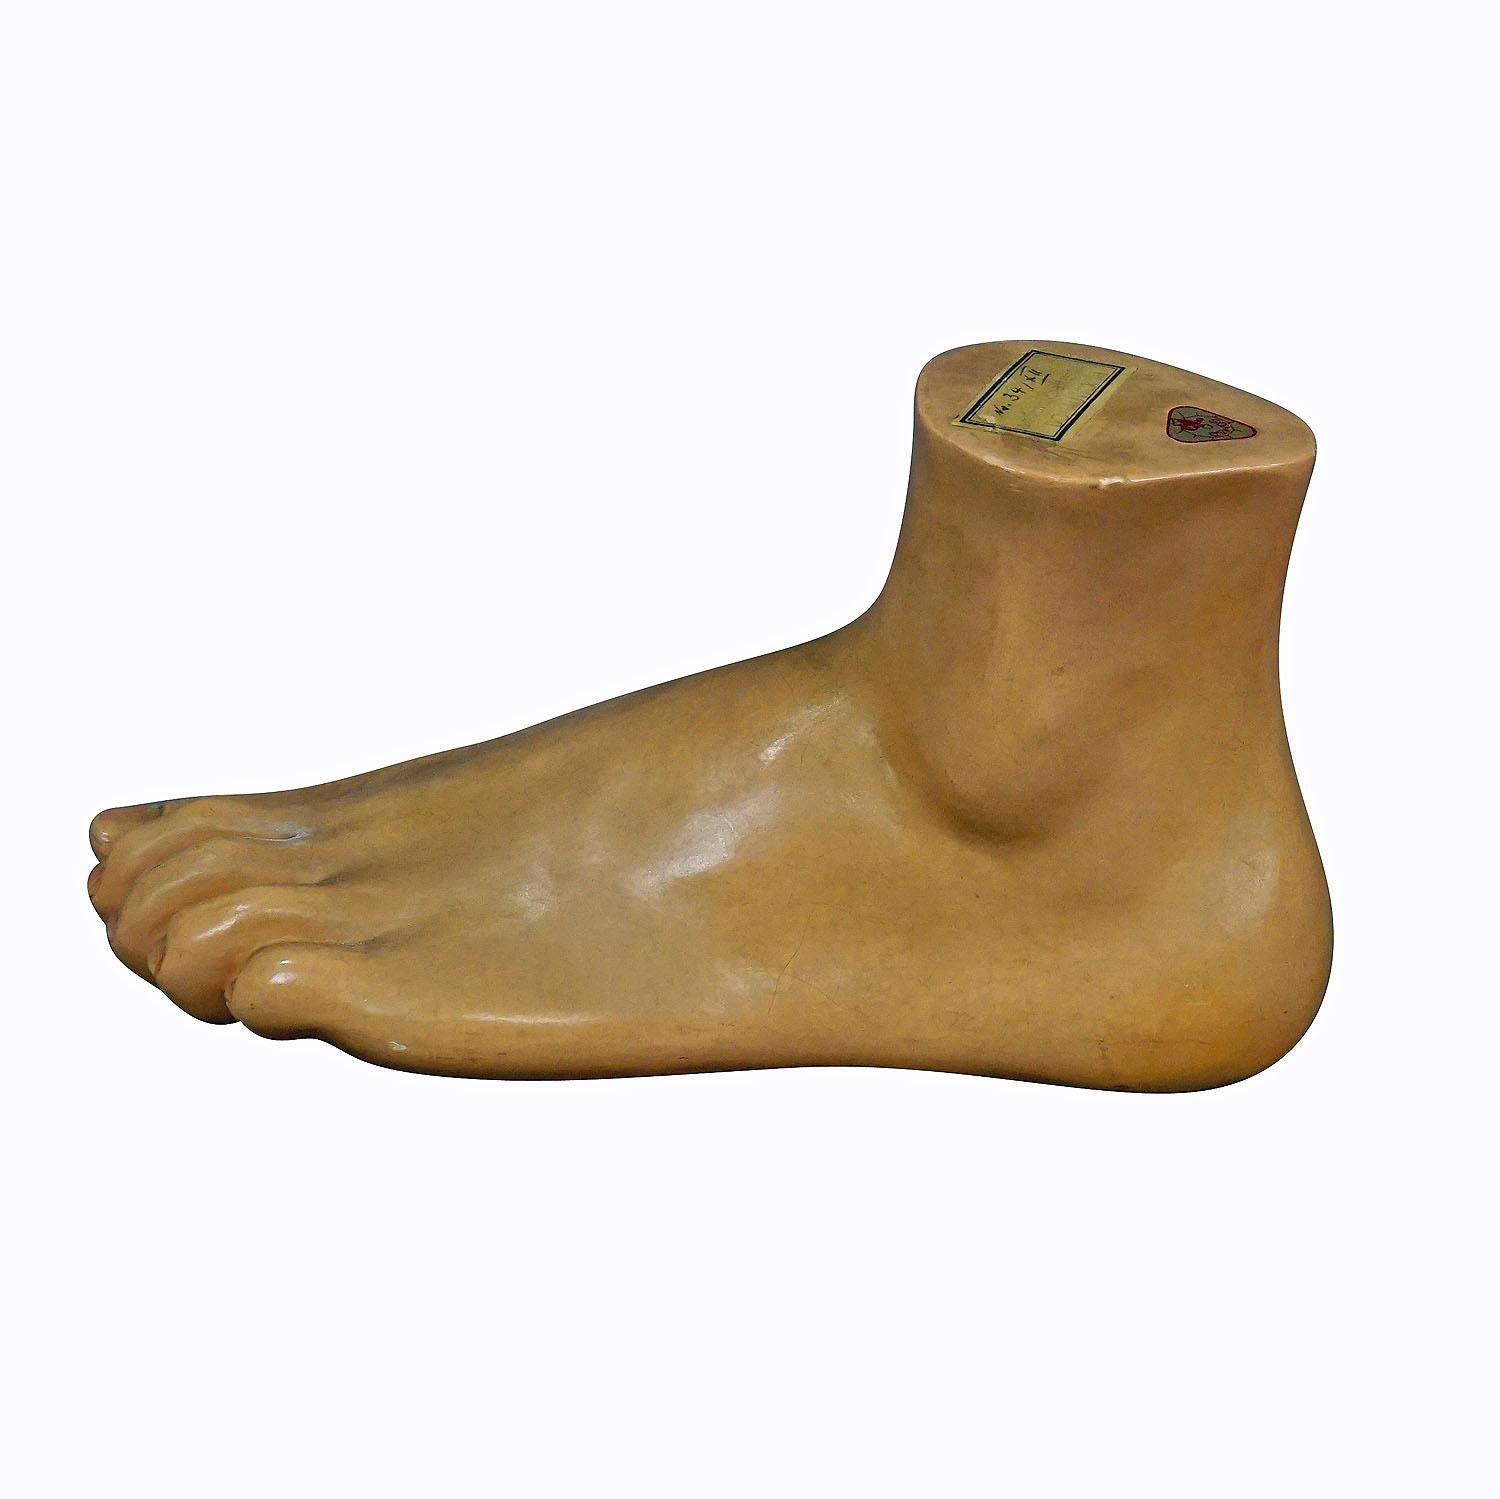 Antikes 3D- Anatomisches Fußmodell von SOMSO, hergestellt von SOMSO, ca. 1930

Ein zart handbemaltes und sehr detailliertes anatomisches Fußmodell für den Unterricht. Sie ist aus Pappmaché und Gips, hergestellt von SOMSO, Deutschland ca. 1930.